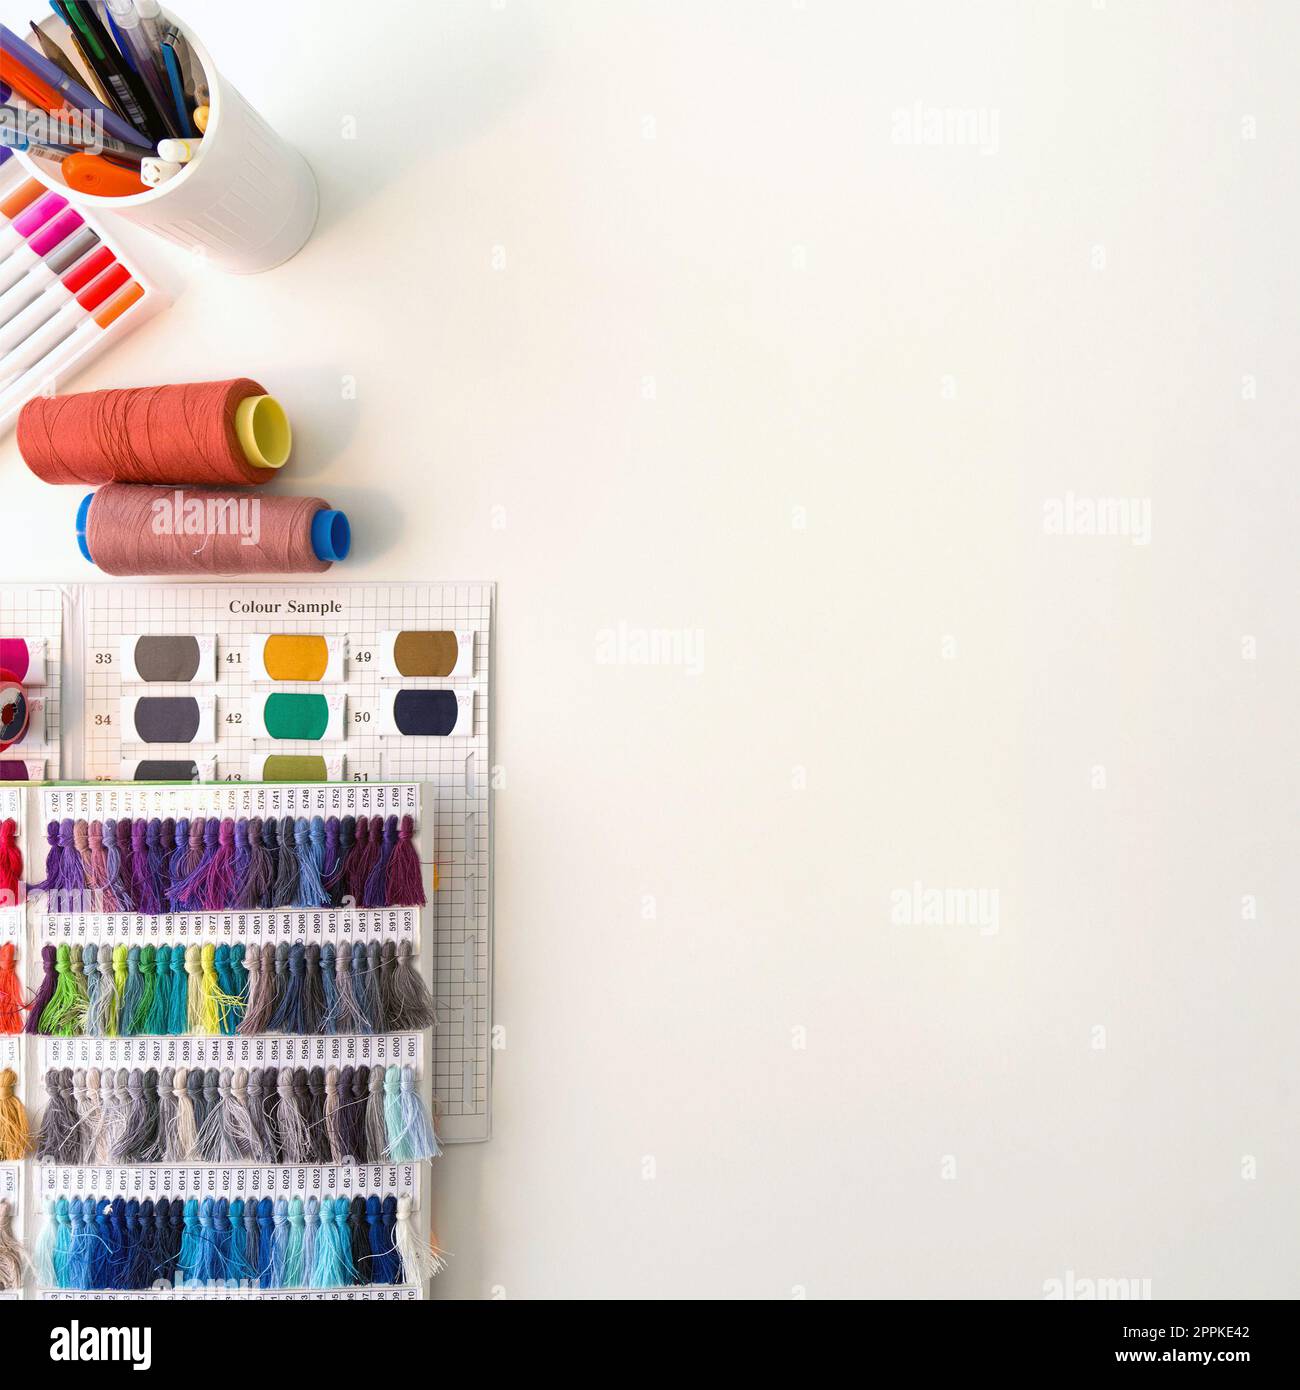 Mehrfarbige magische Stifte, Farbmusterkatalog mit Seidenfaden, mehrfarbige Gewindespindel und Skizzieren auf einem großen Tisch. Draufsicht Stockfoto